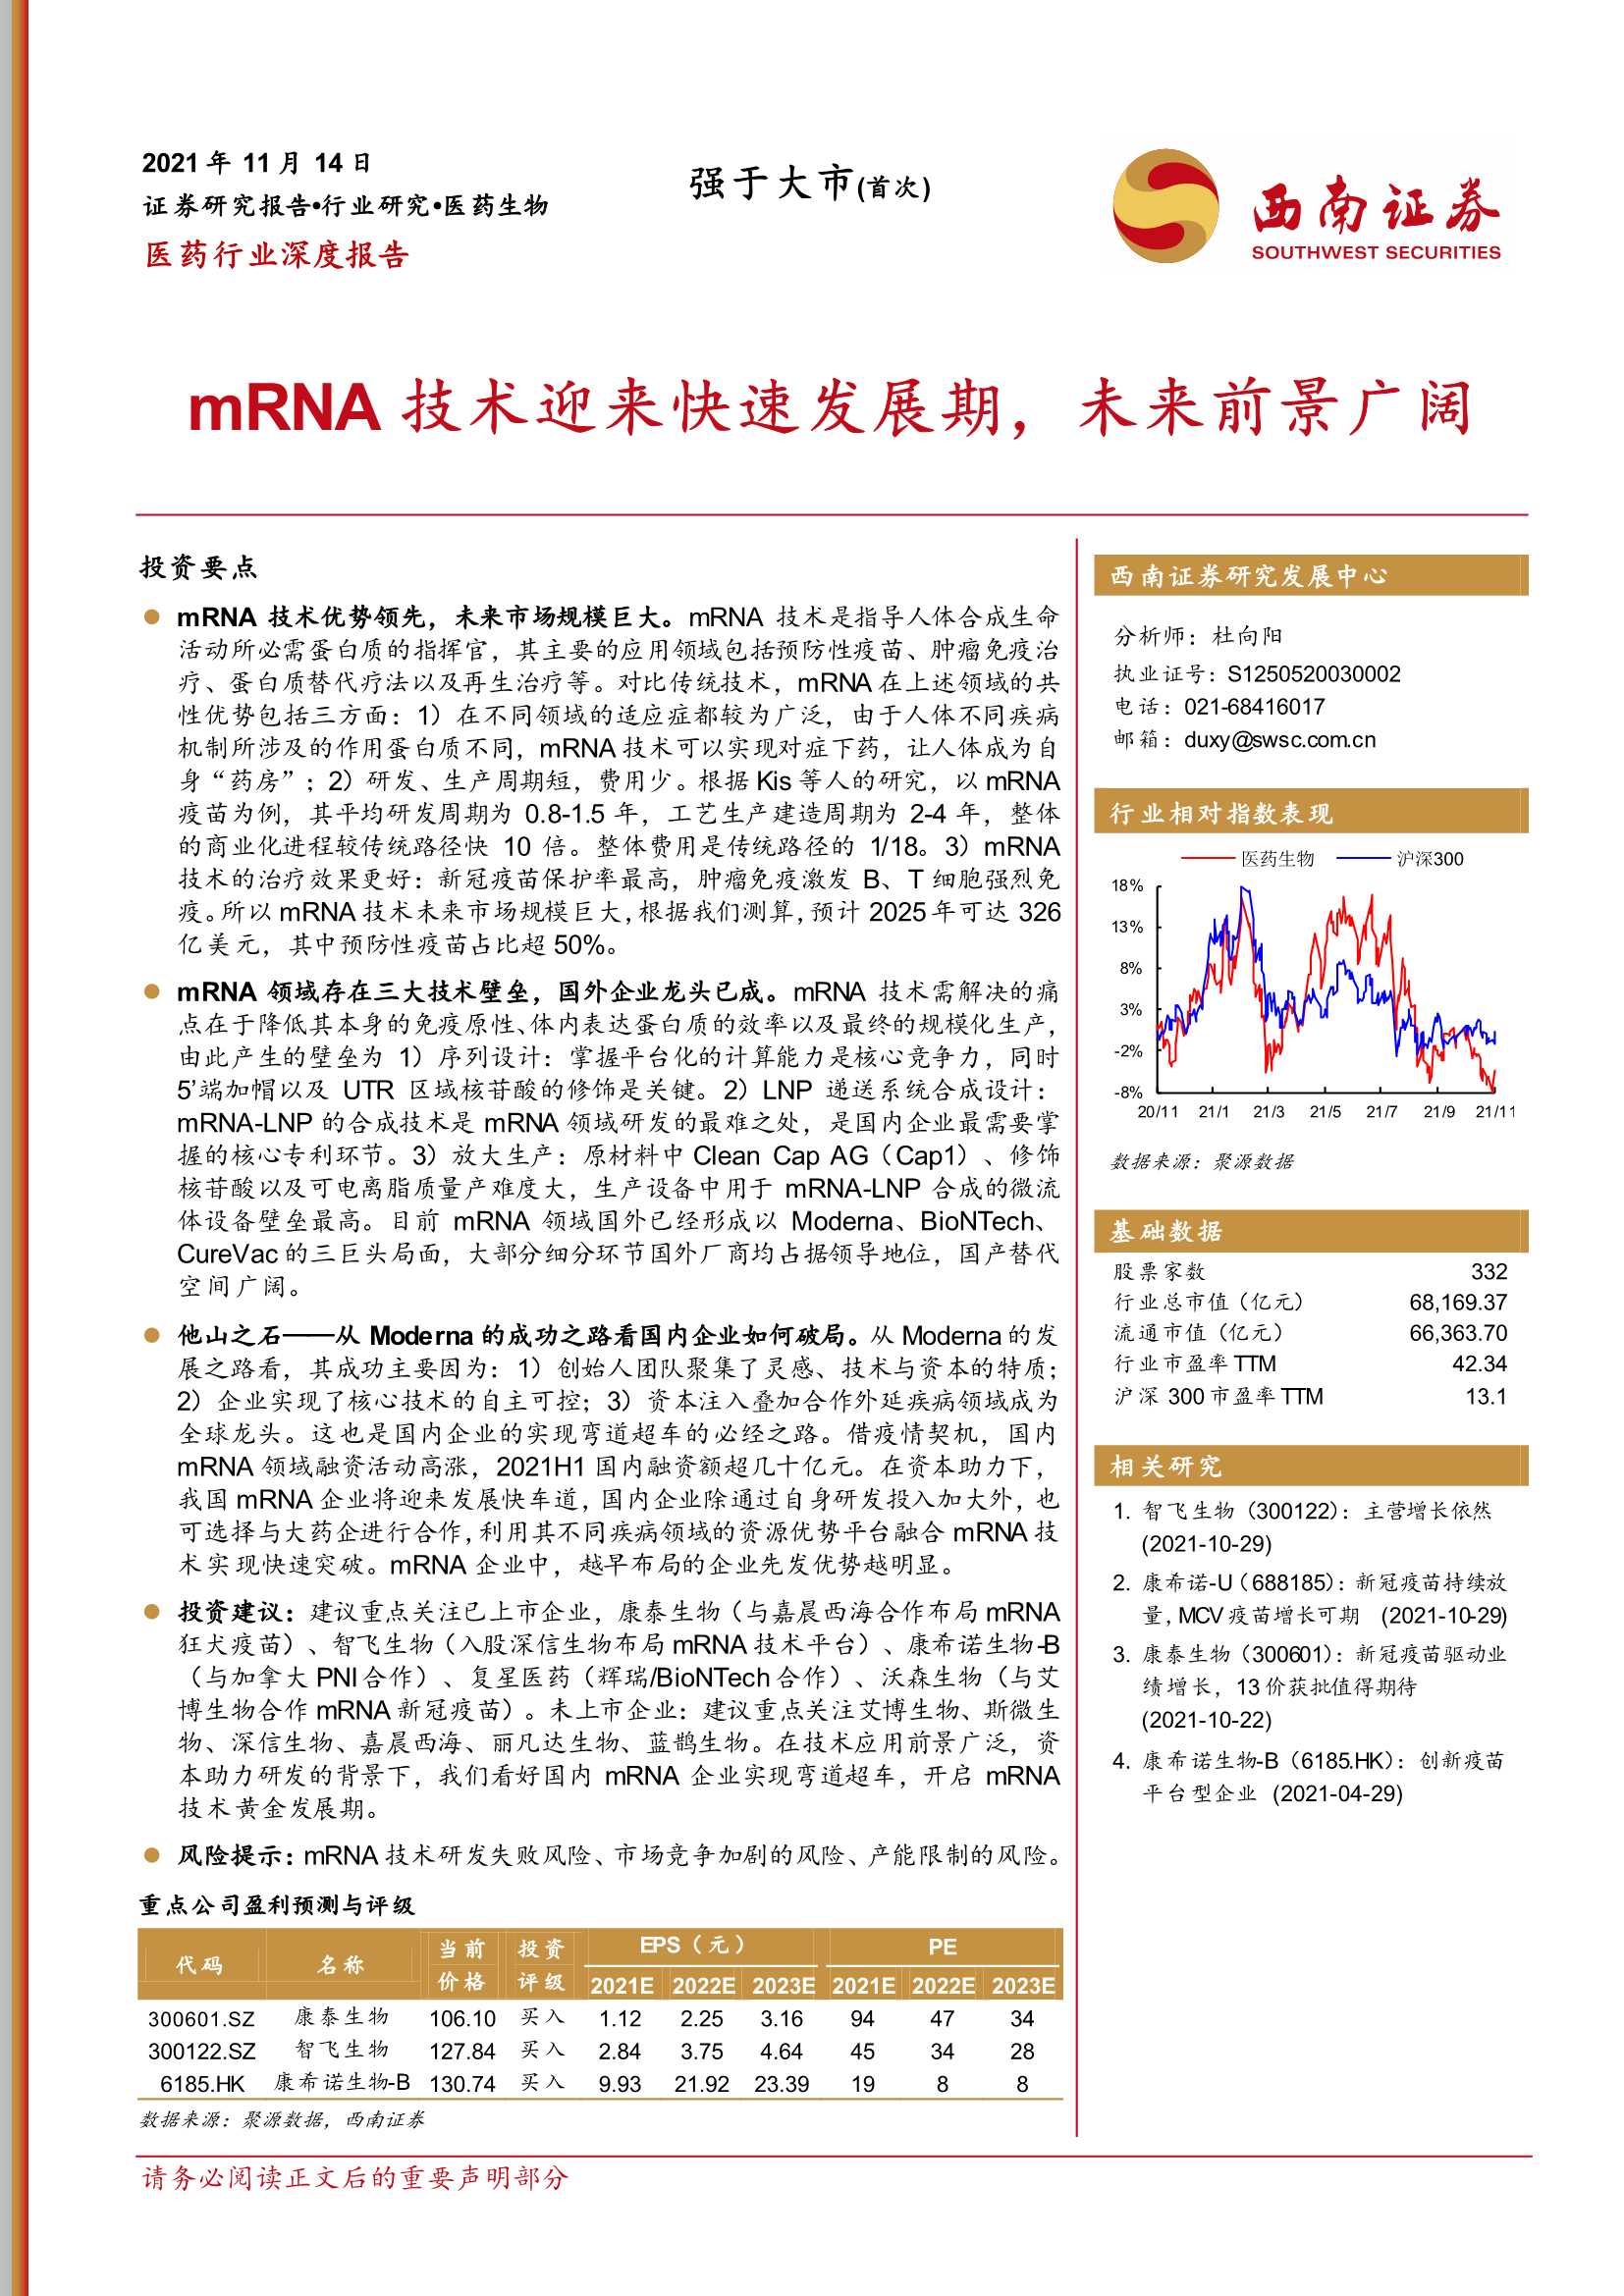 西南证券-医药行业深度报告：mRNA技术迎来快速发展期，未来前景广阔-20211114-50页